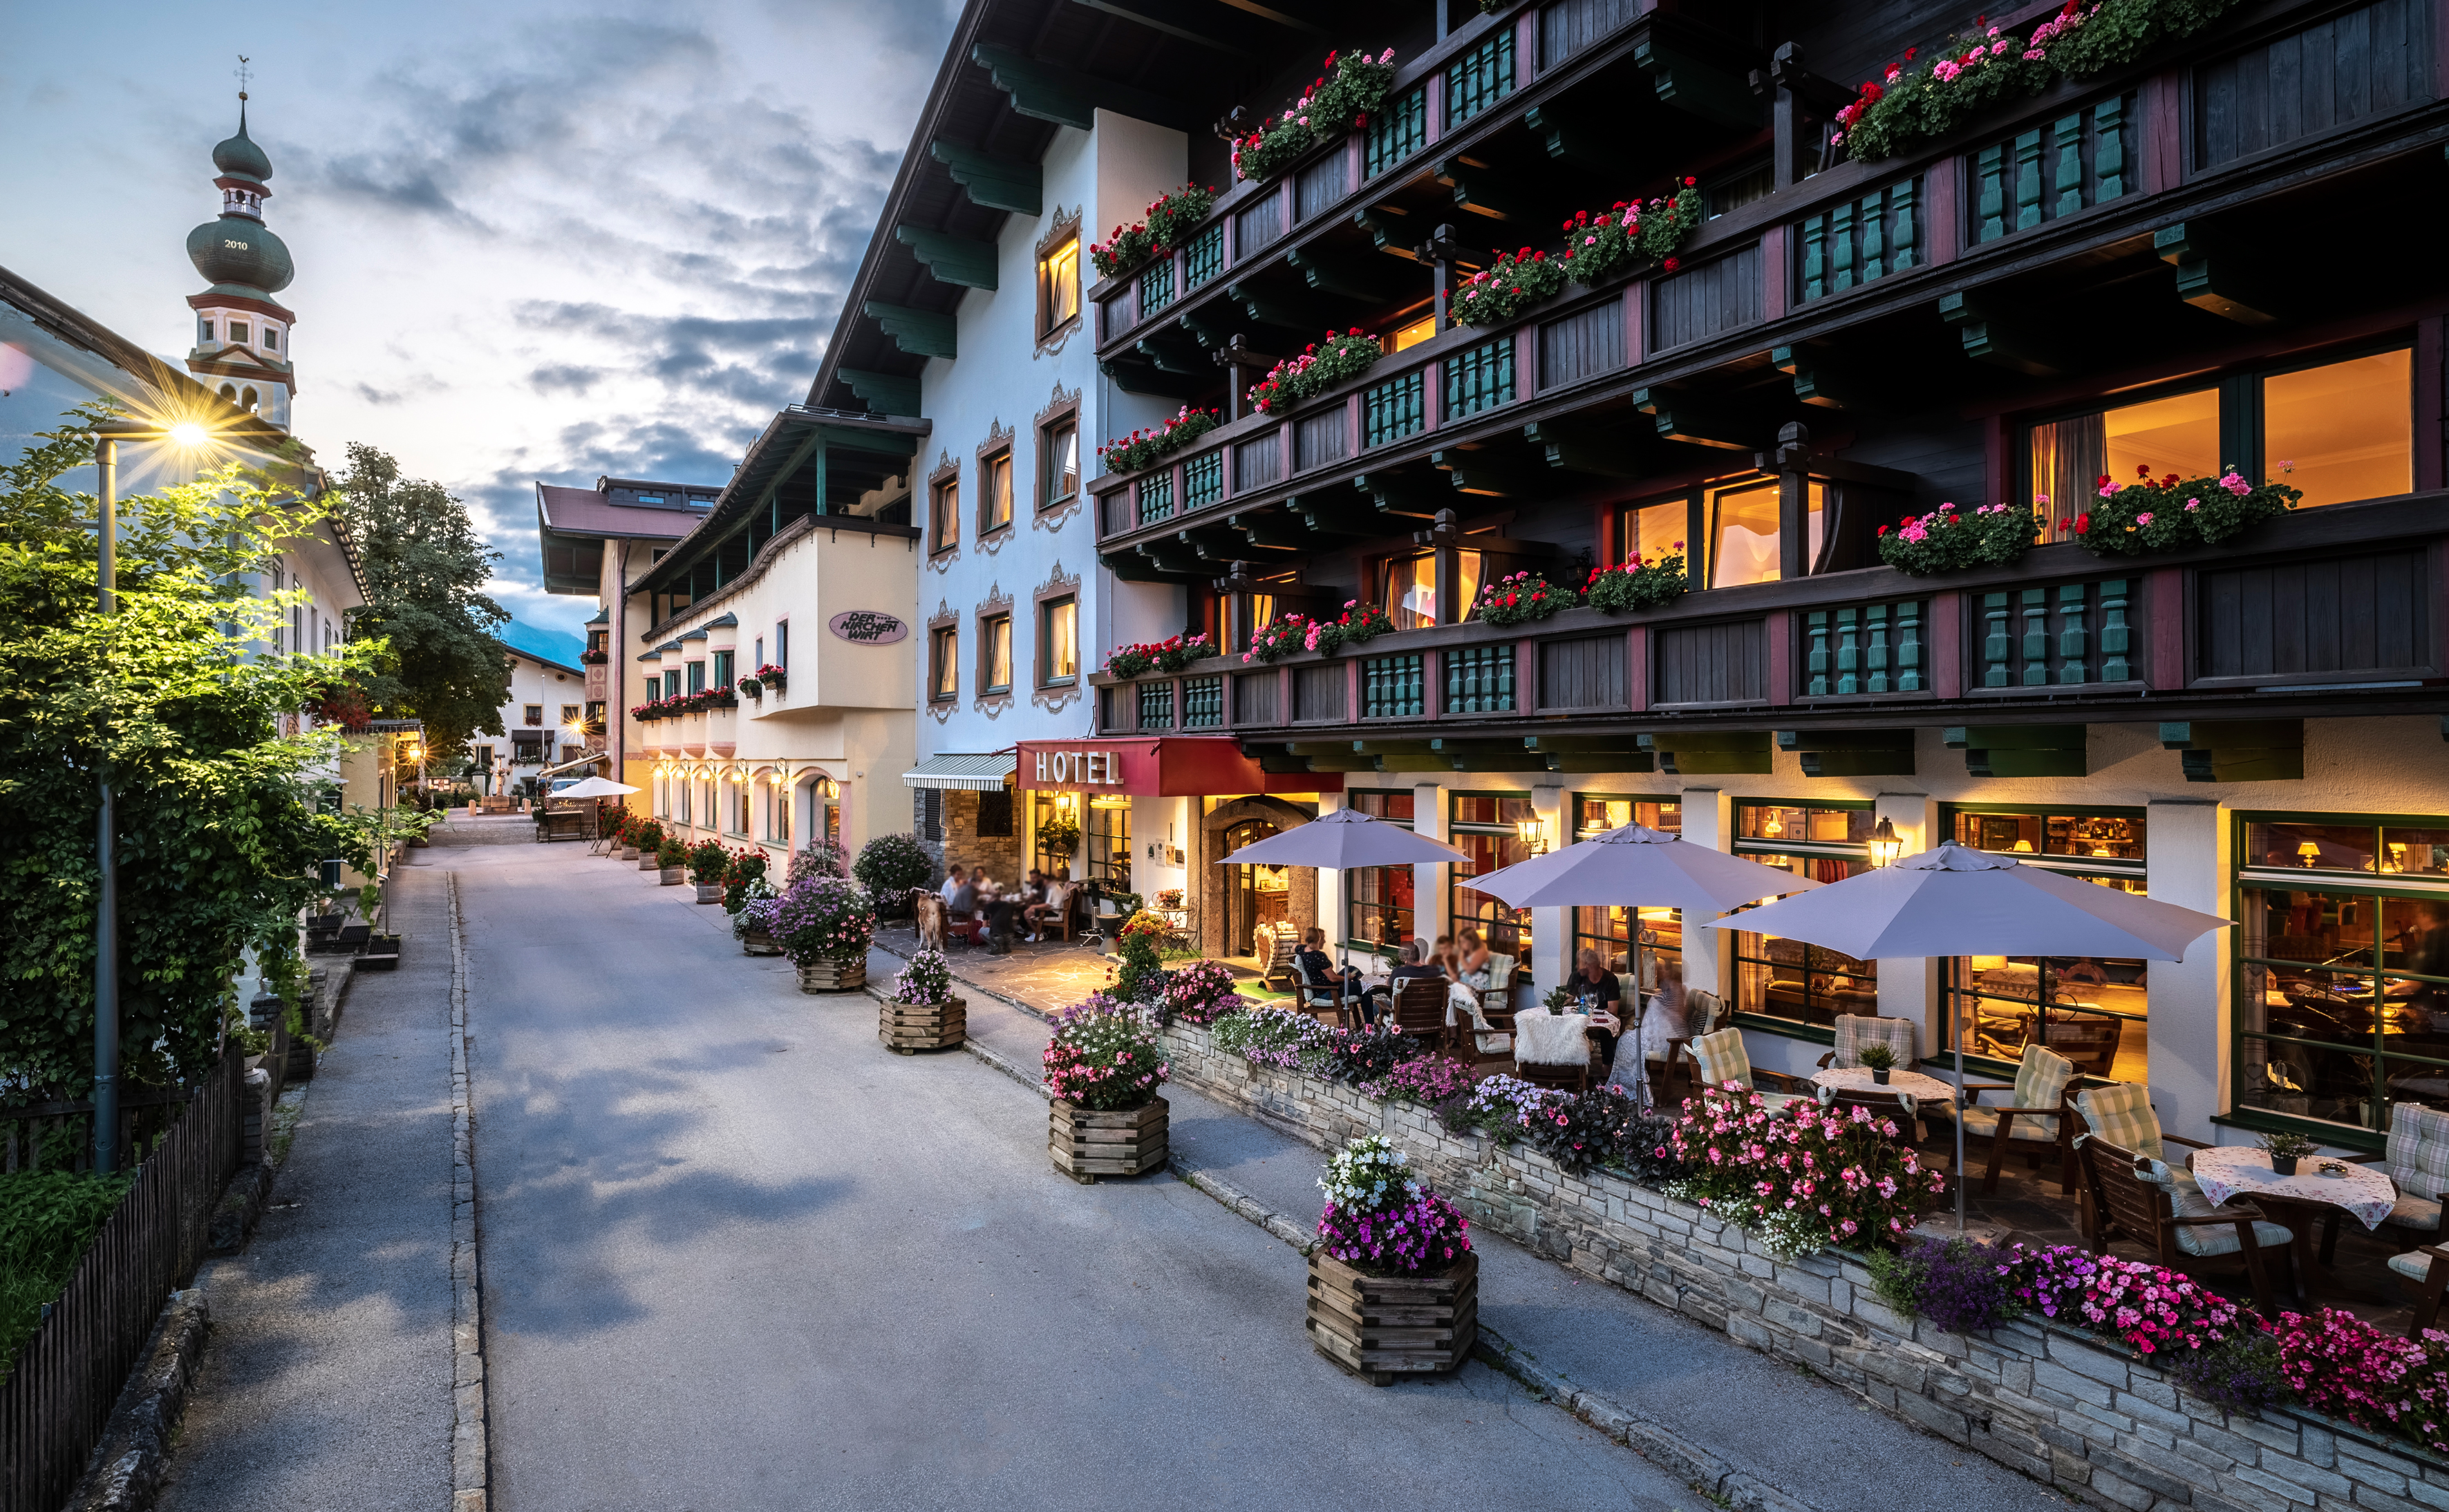 Gutschein im Wert von 500 Euro für den Kirchenwirt im Tiroler Alpbachtal